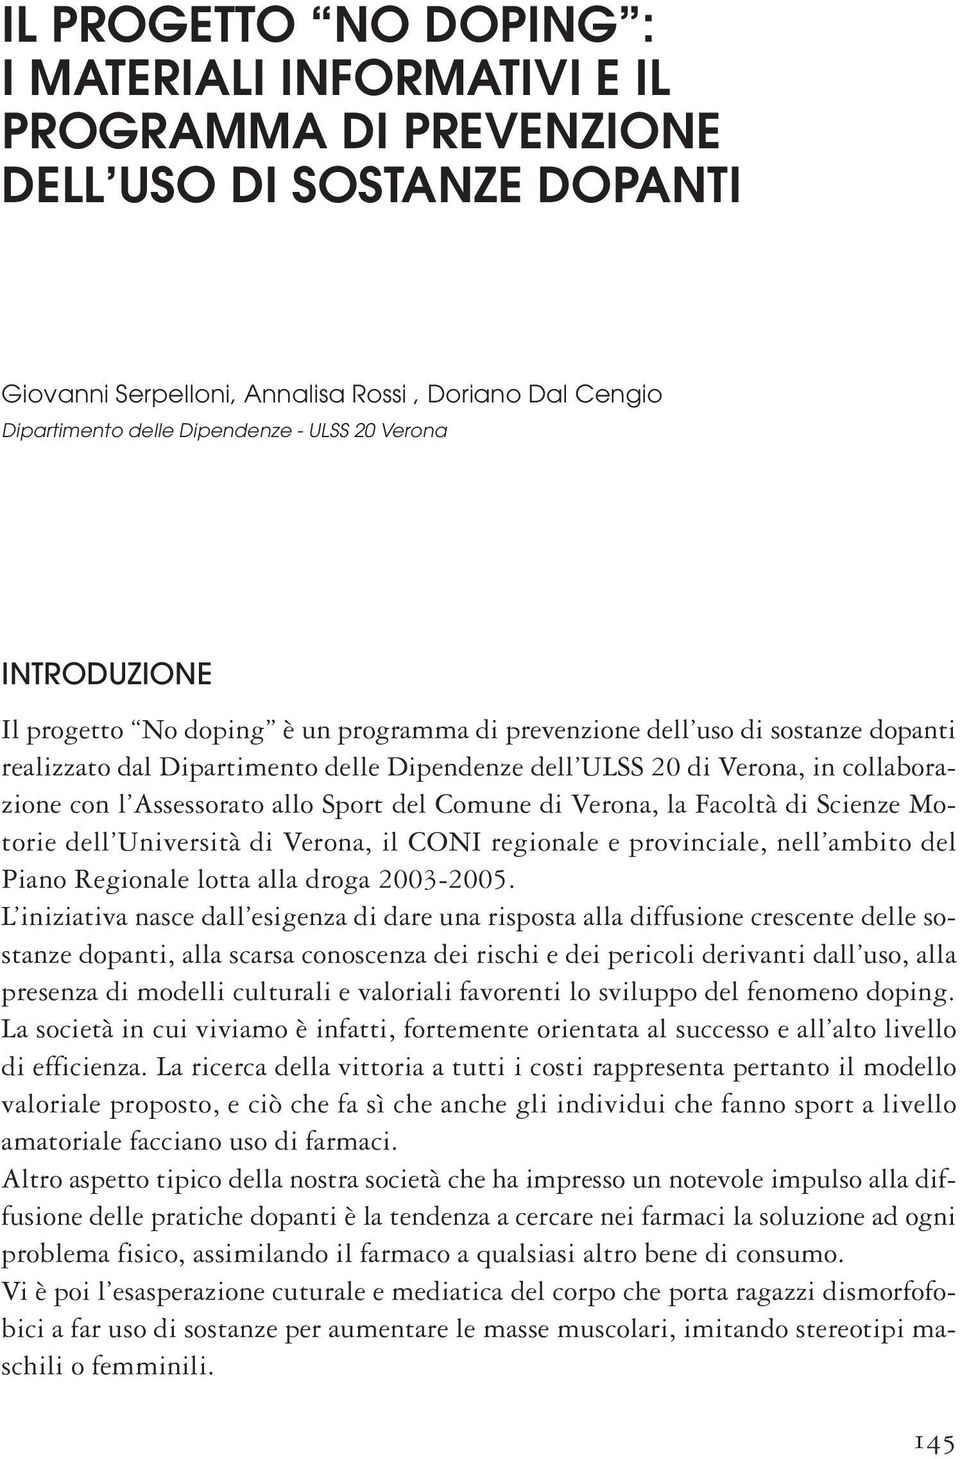 Assessorato allo Sport del Comune di Verona, la Facoltà di Scienze Motorie dell Università di Verona, il CONI regionale e provinciale, nell ambito del Piano Regionale lotta alla droga 2003-2005.